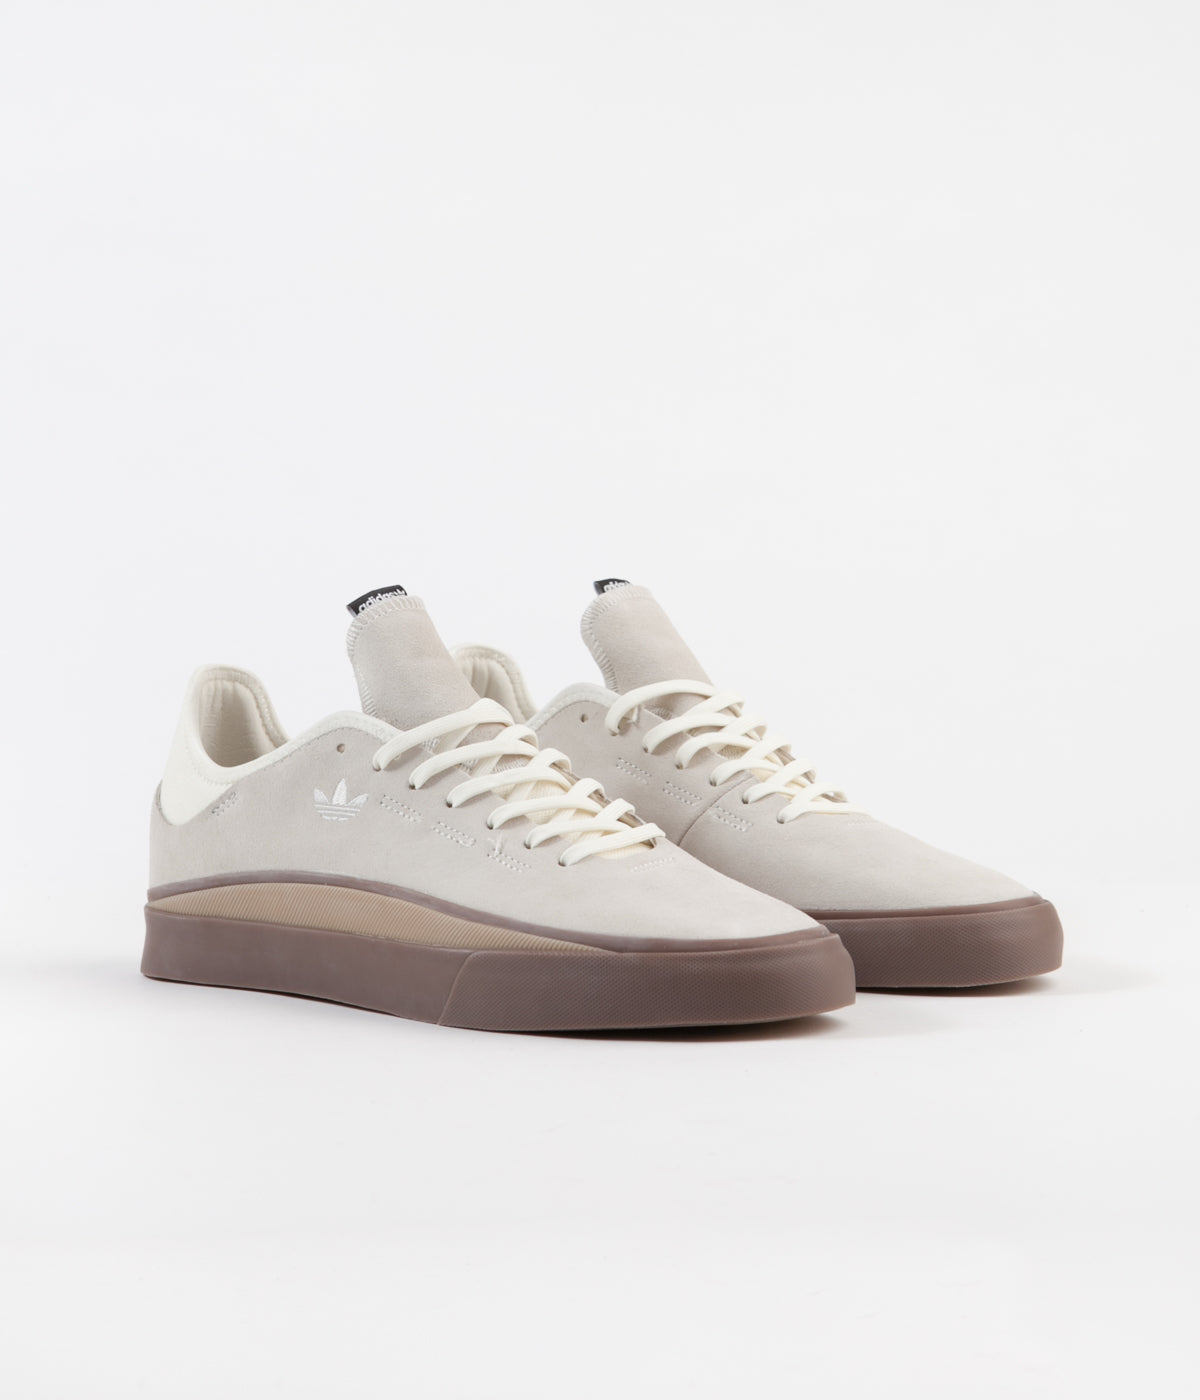 Adidas Sabalo Shoes - Off White / Gum4 